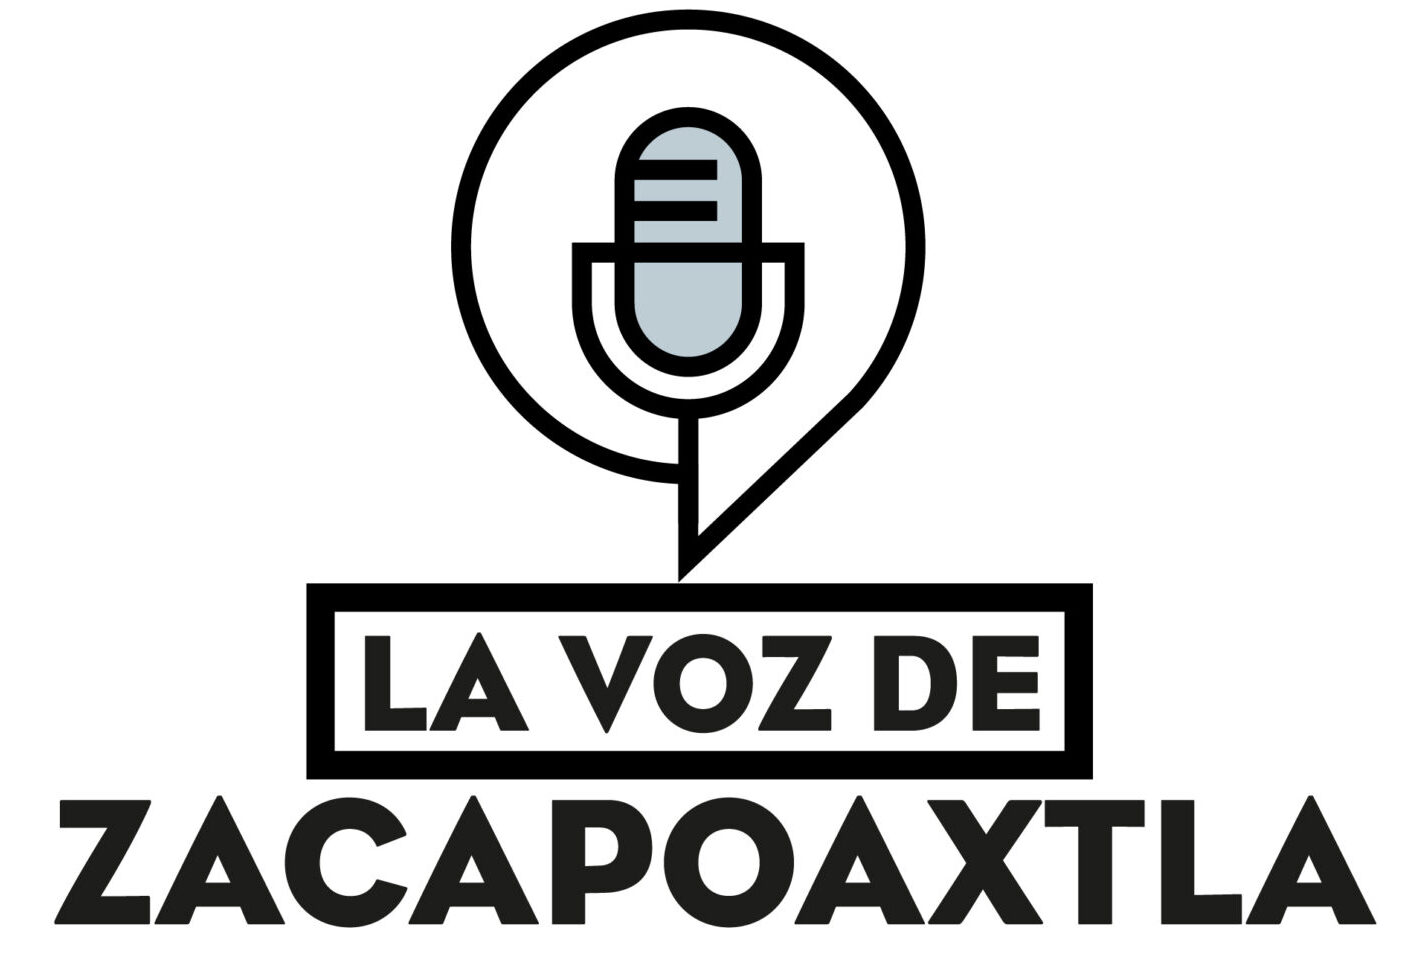 La voz de Zacapoaxtla